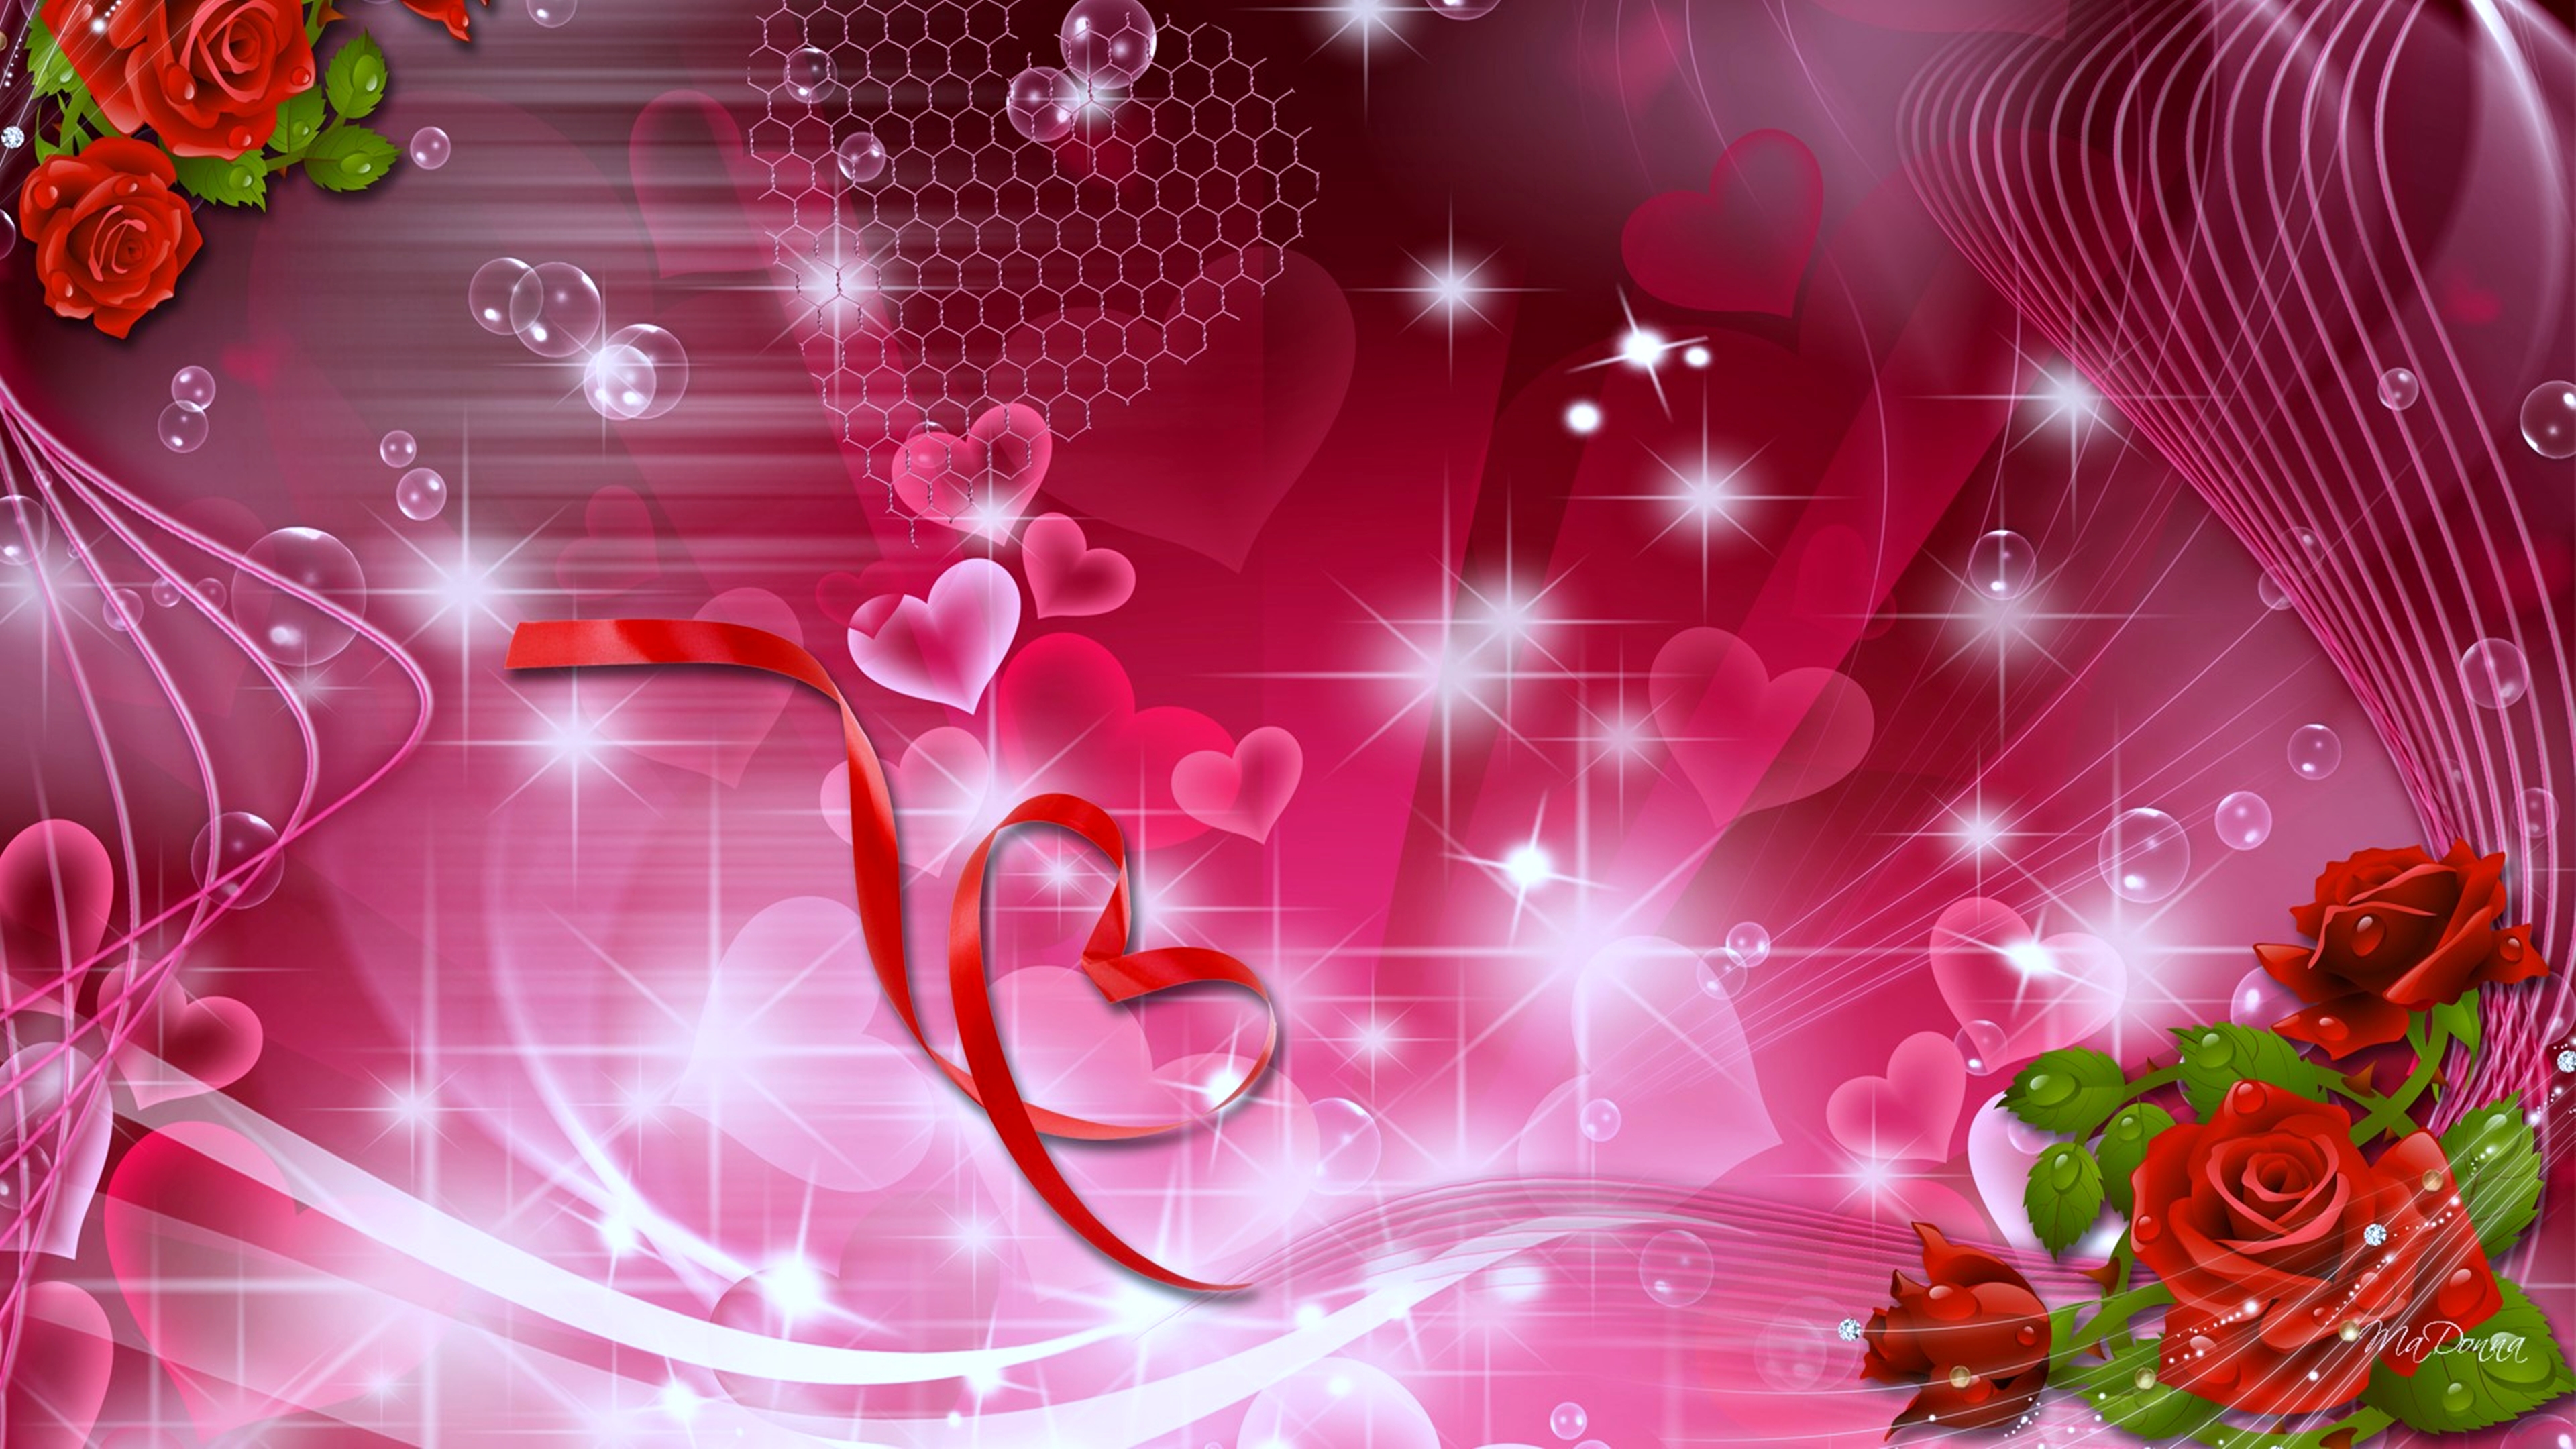 love, heart, rose, artistic, romantic Full HD